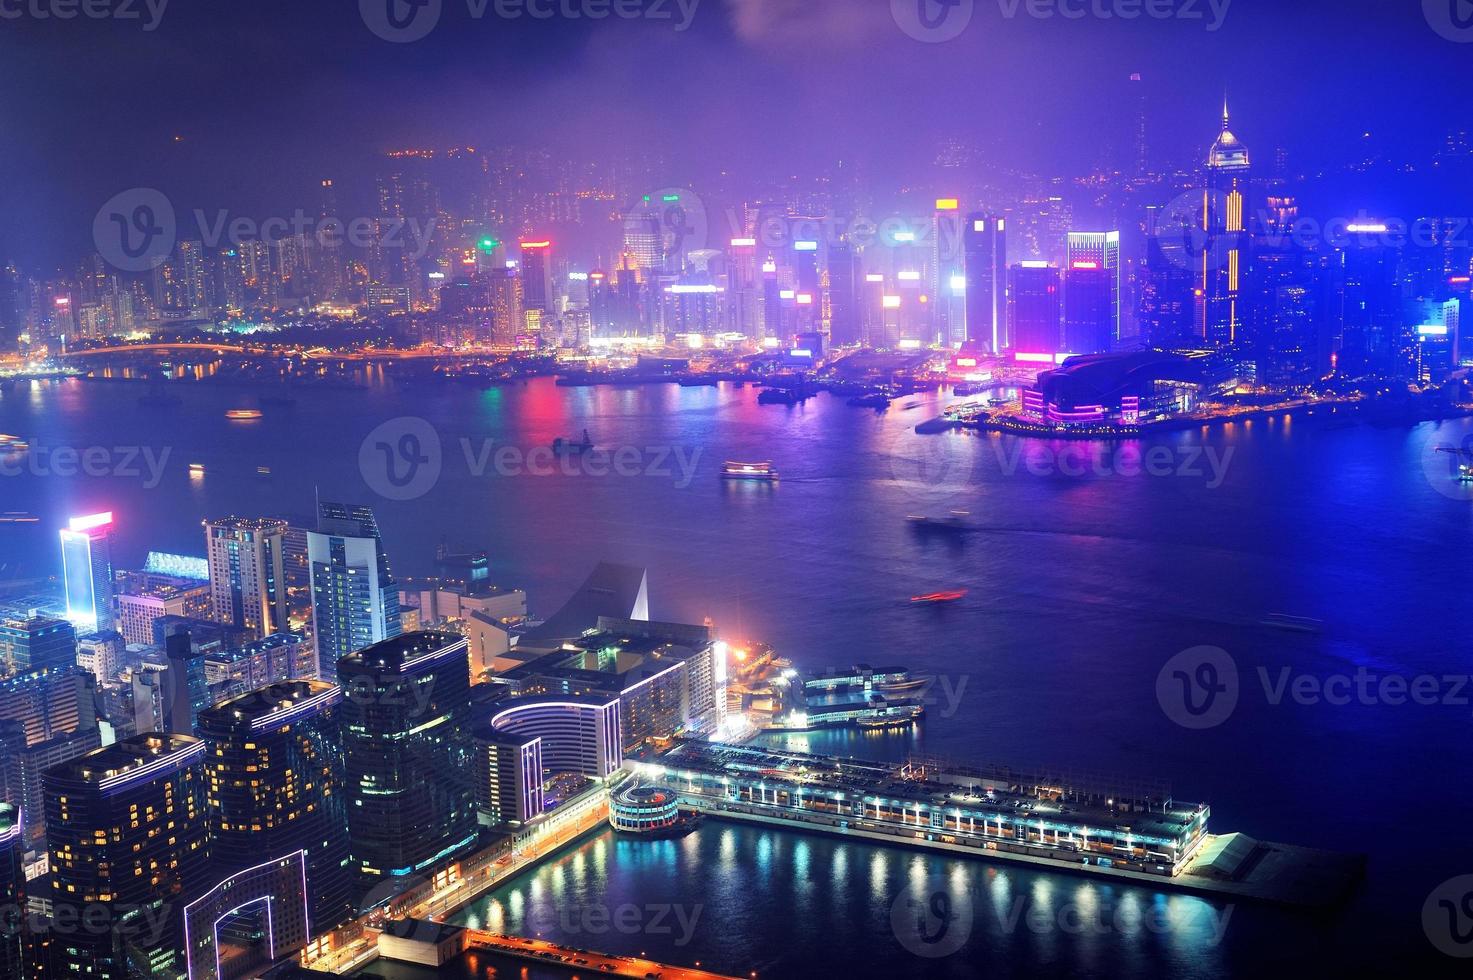 Hong Kong Luftnacht foto